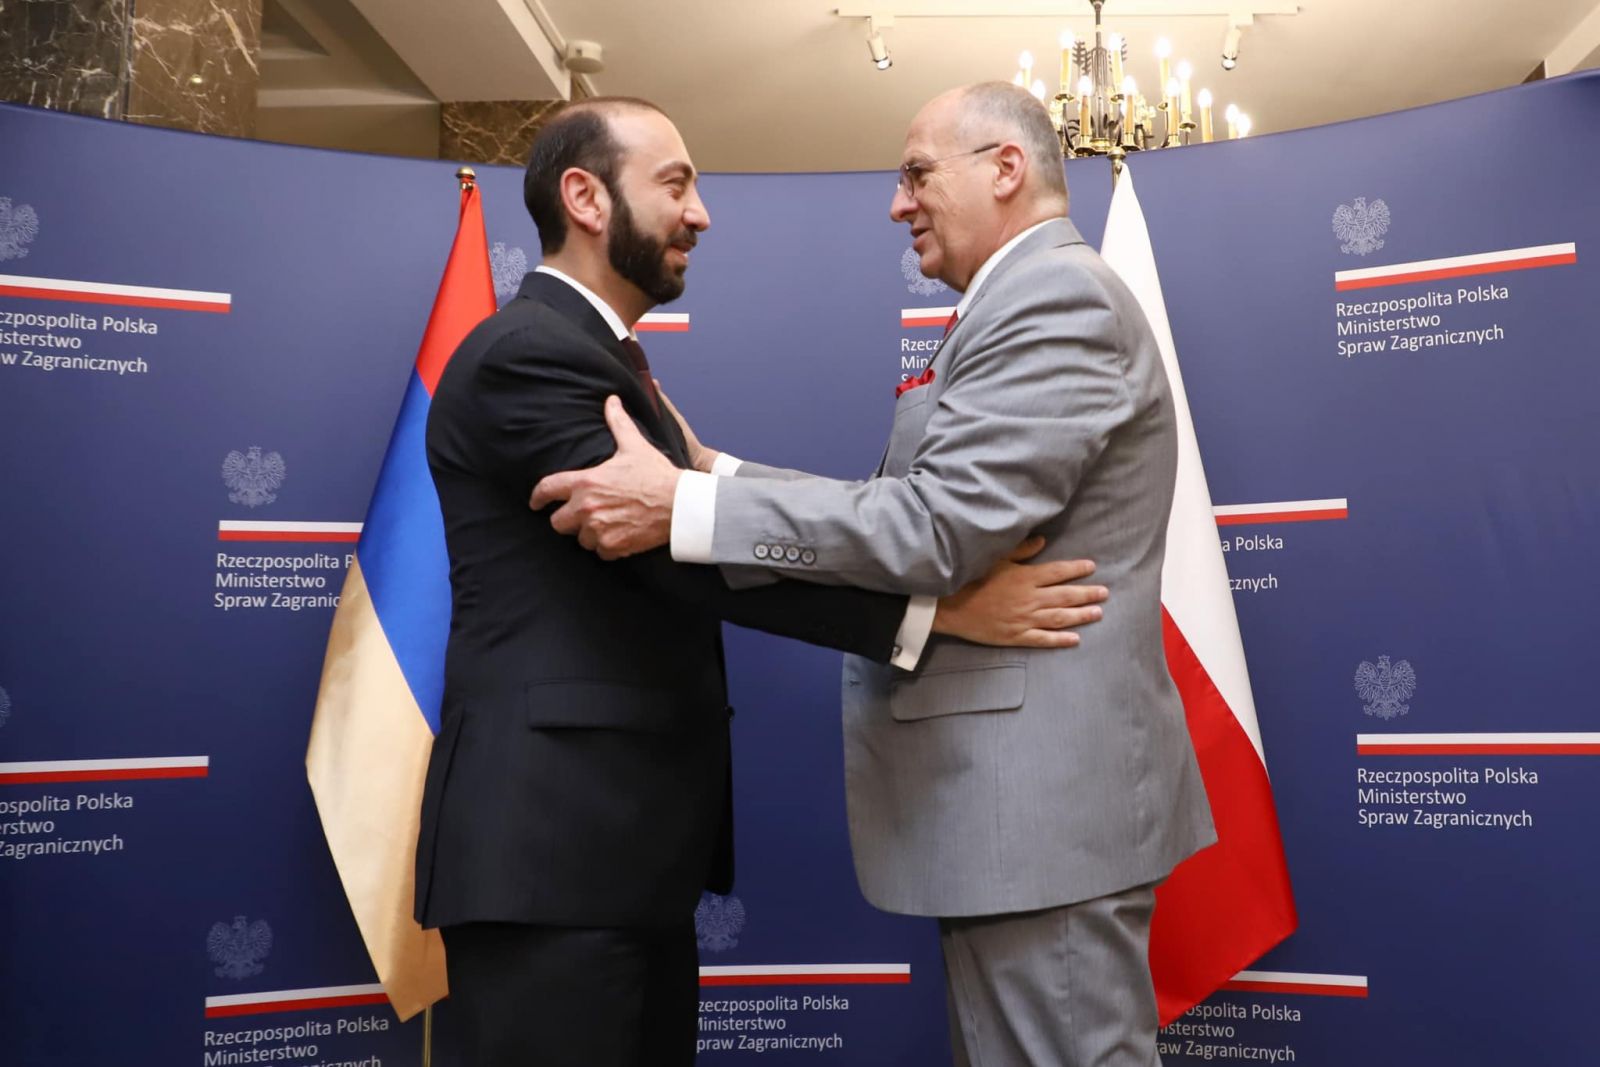 Մեկնարկել է Հայաստանի ԱԳ նախարար Արարատ Միրզոյանի պաշտոնական այցը Լեհաստան